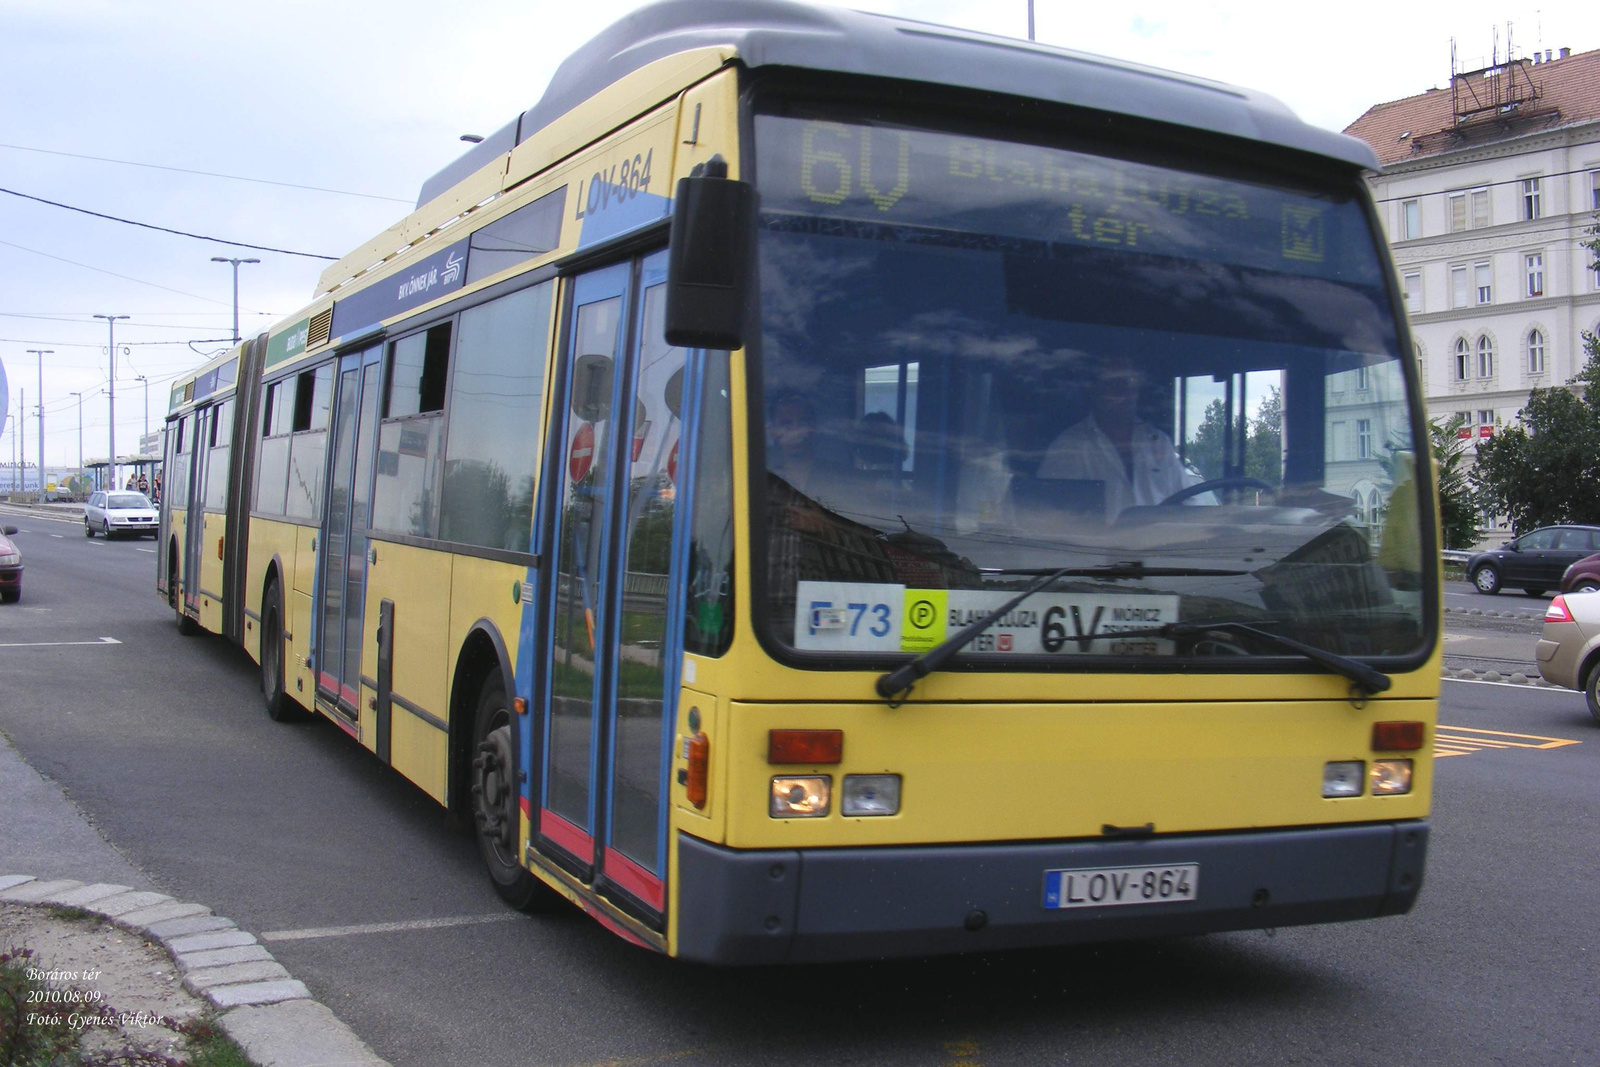 Busz LOV-864